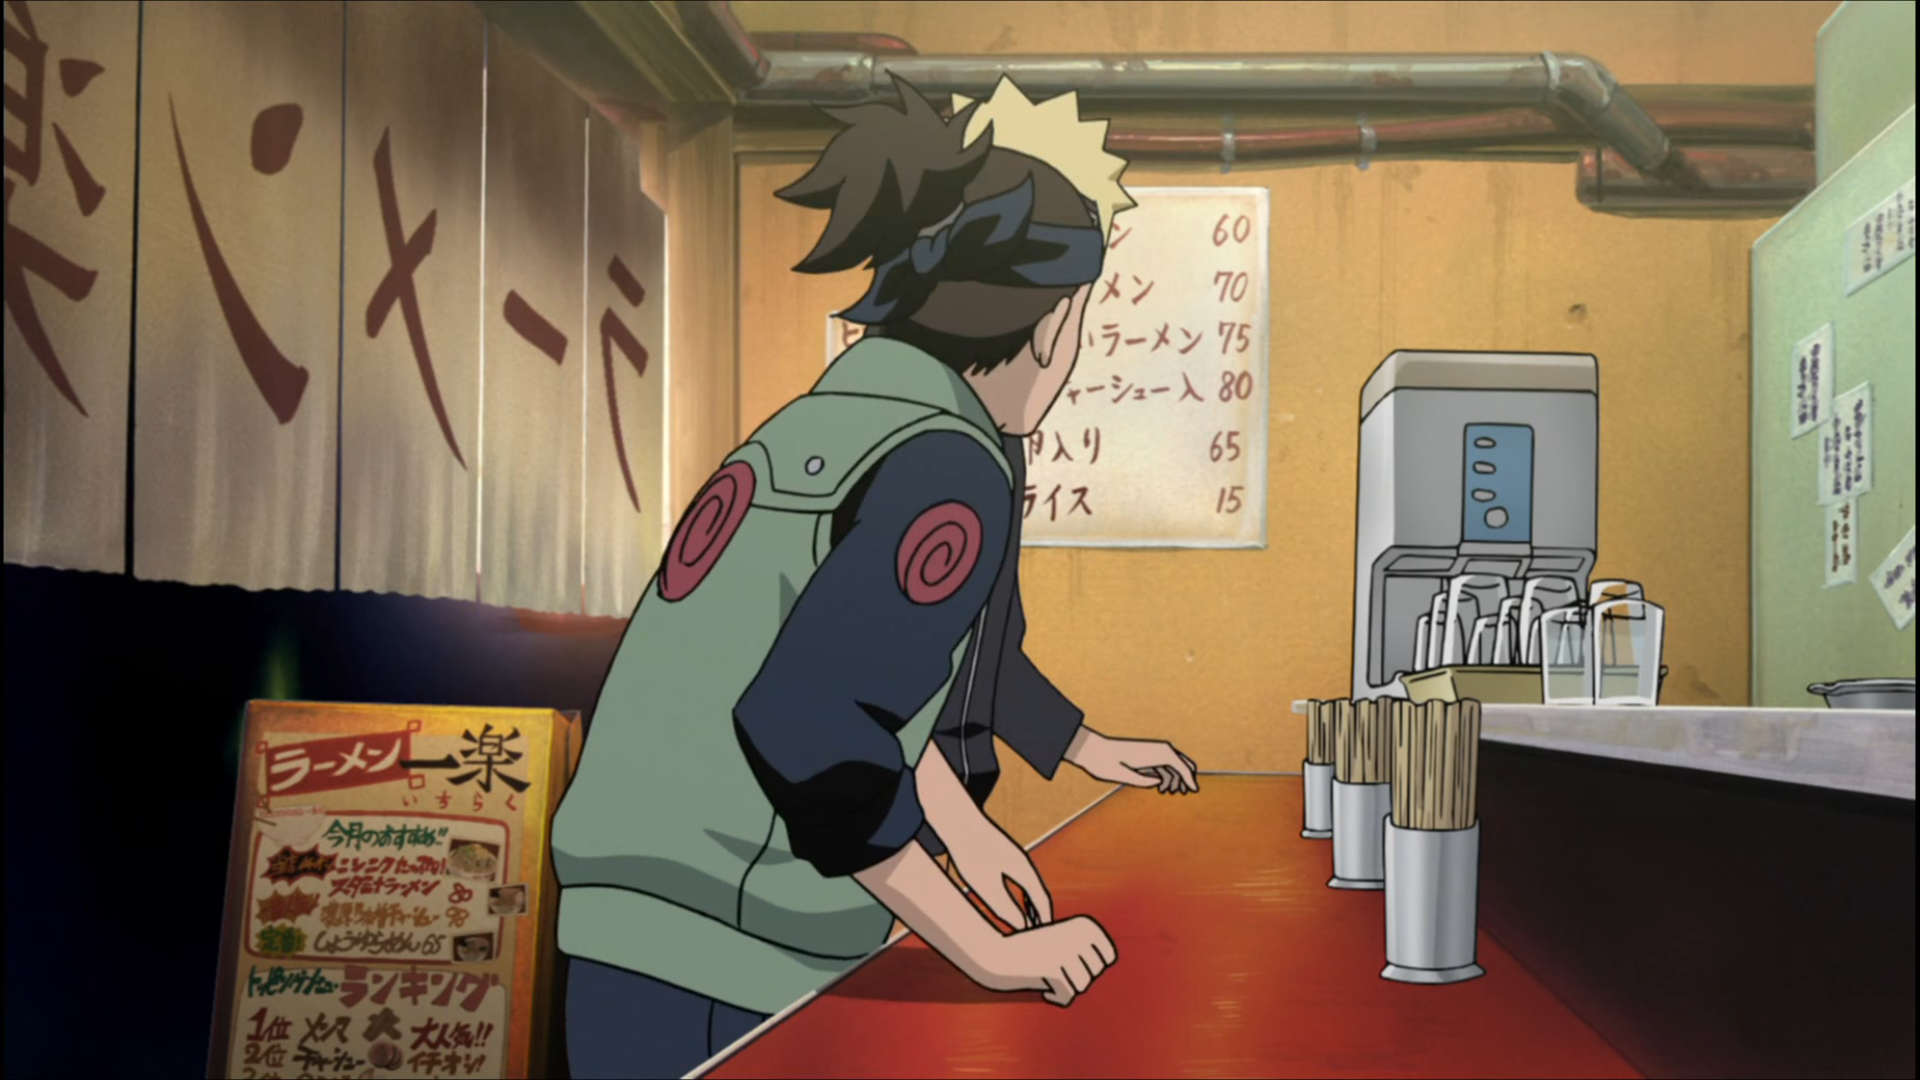 Quiz] Naruto: Acerte a vila desses personagens do anime